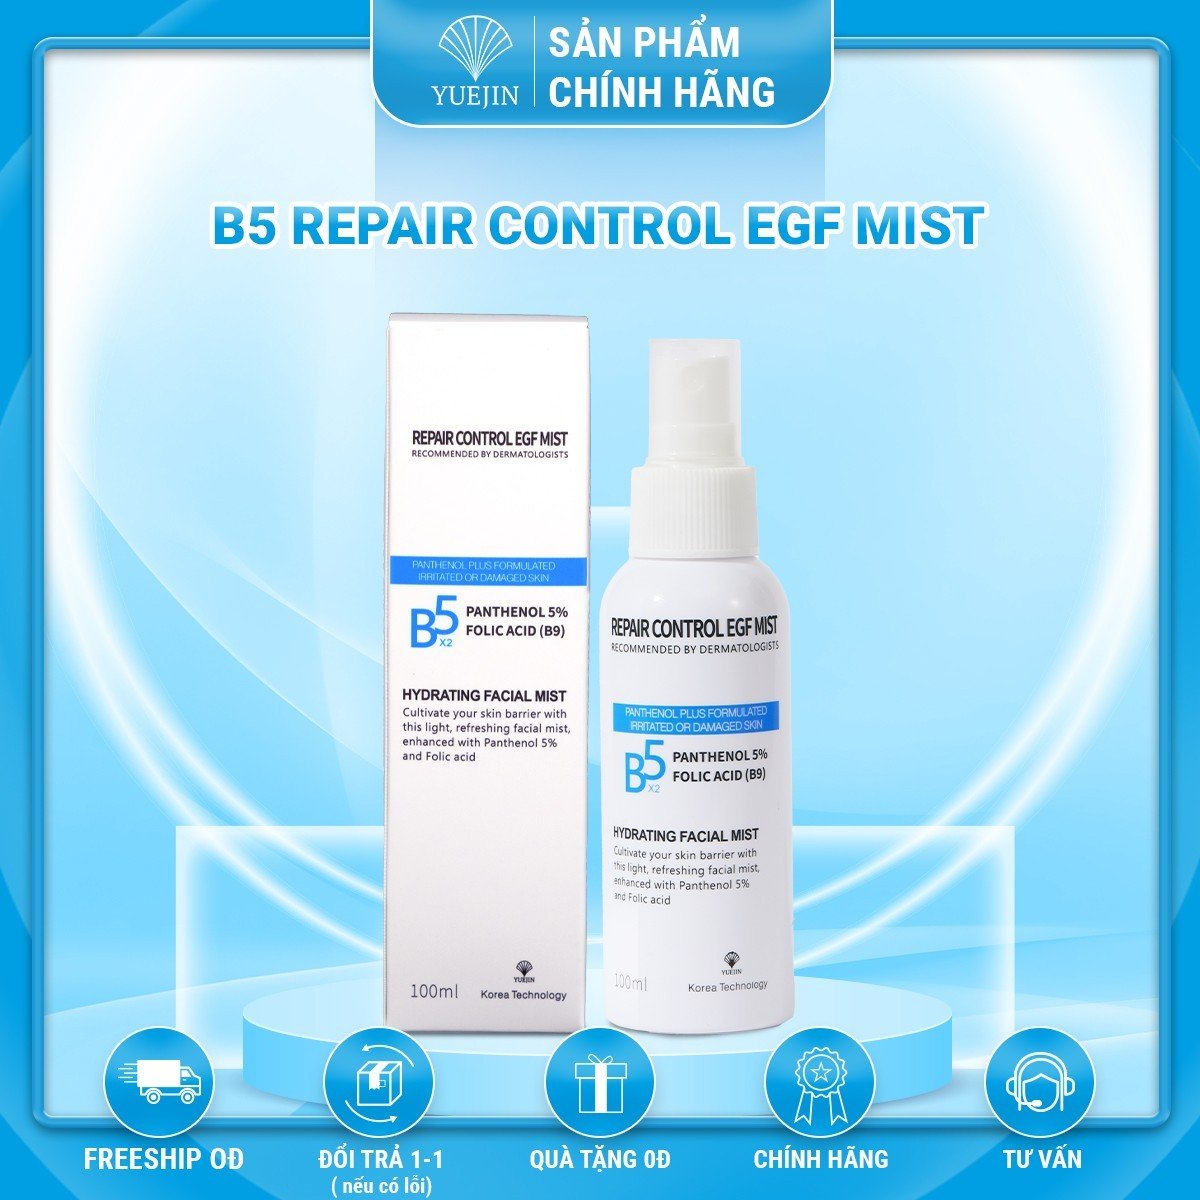 Xịt dưỡng da, cấp ẩm, phục hồi Yuejin B5 Mist, cấp độ ẩm vả dưỡng chất cho da, làm dịu, ngăn ngừa hình thành nhân mụn